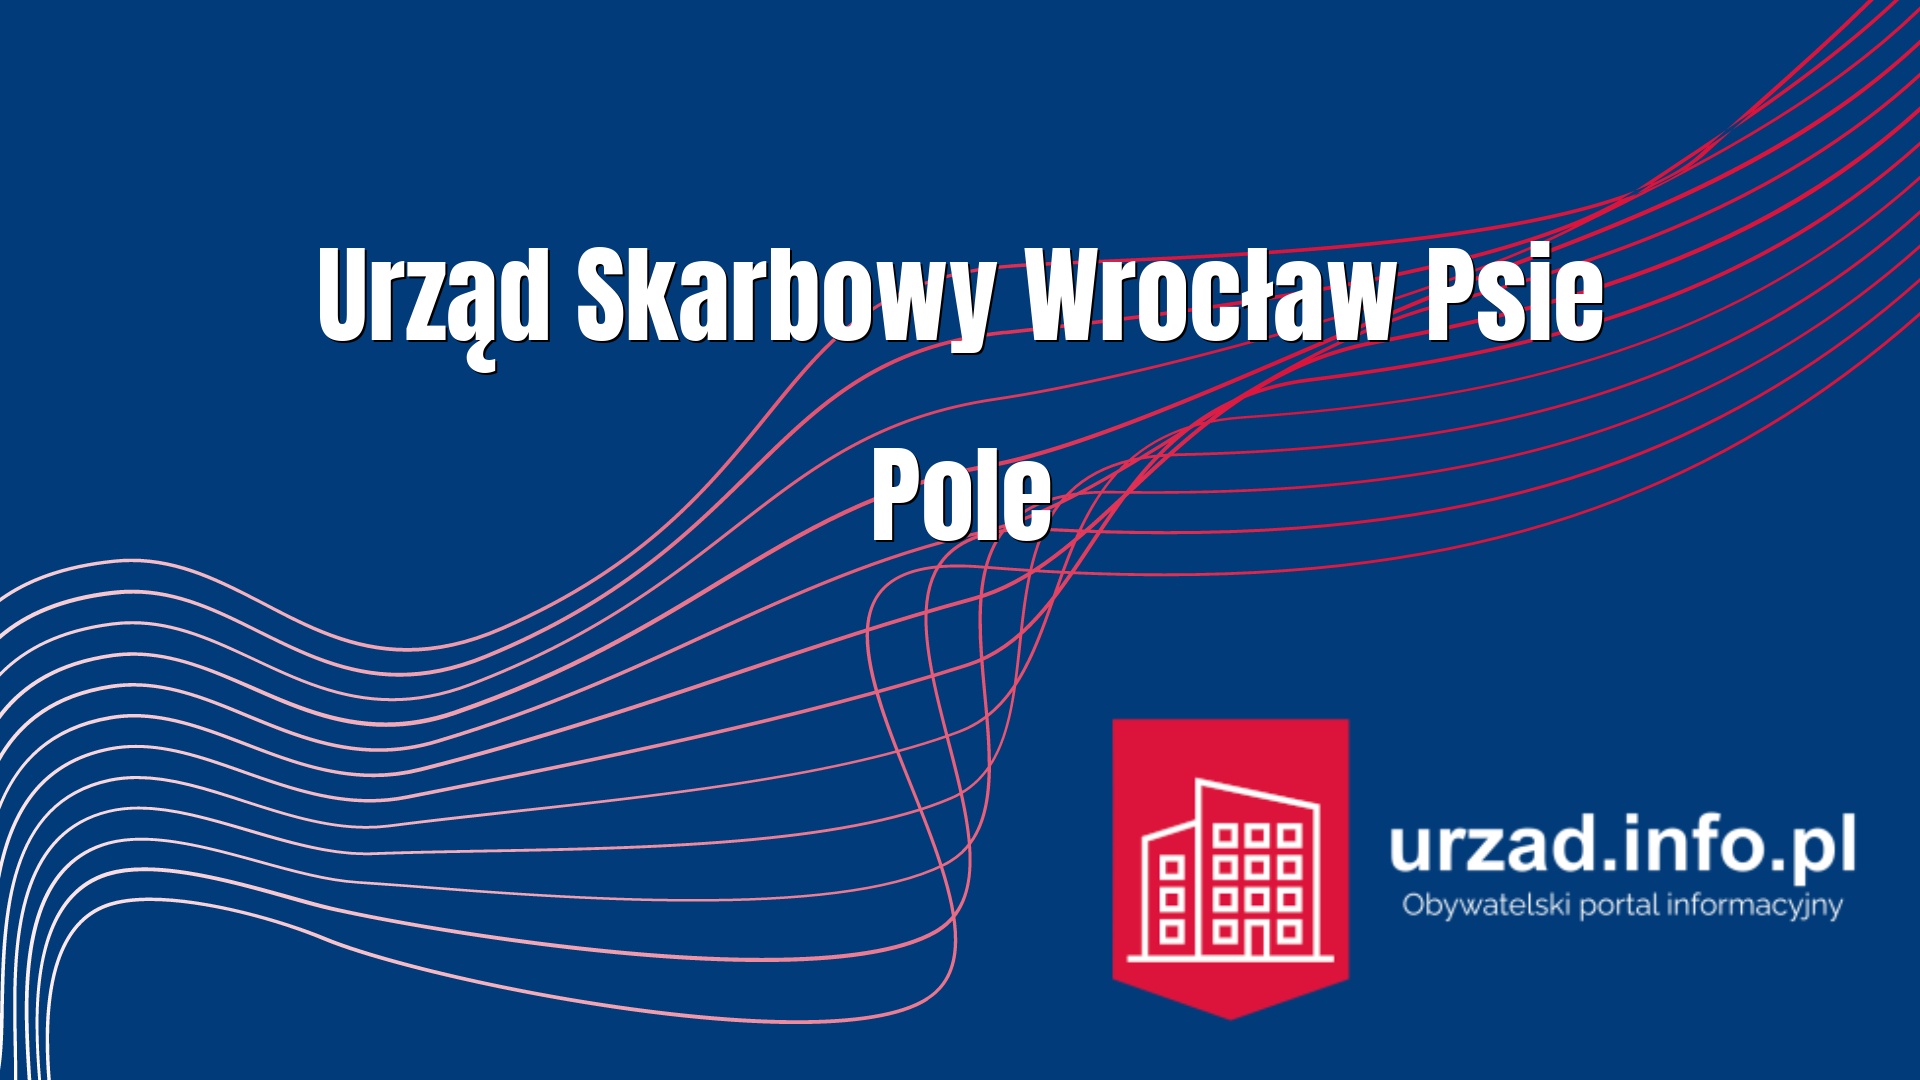 Urząd Skarbowy Wrocław-Psie Pole